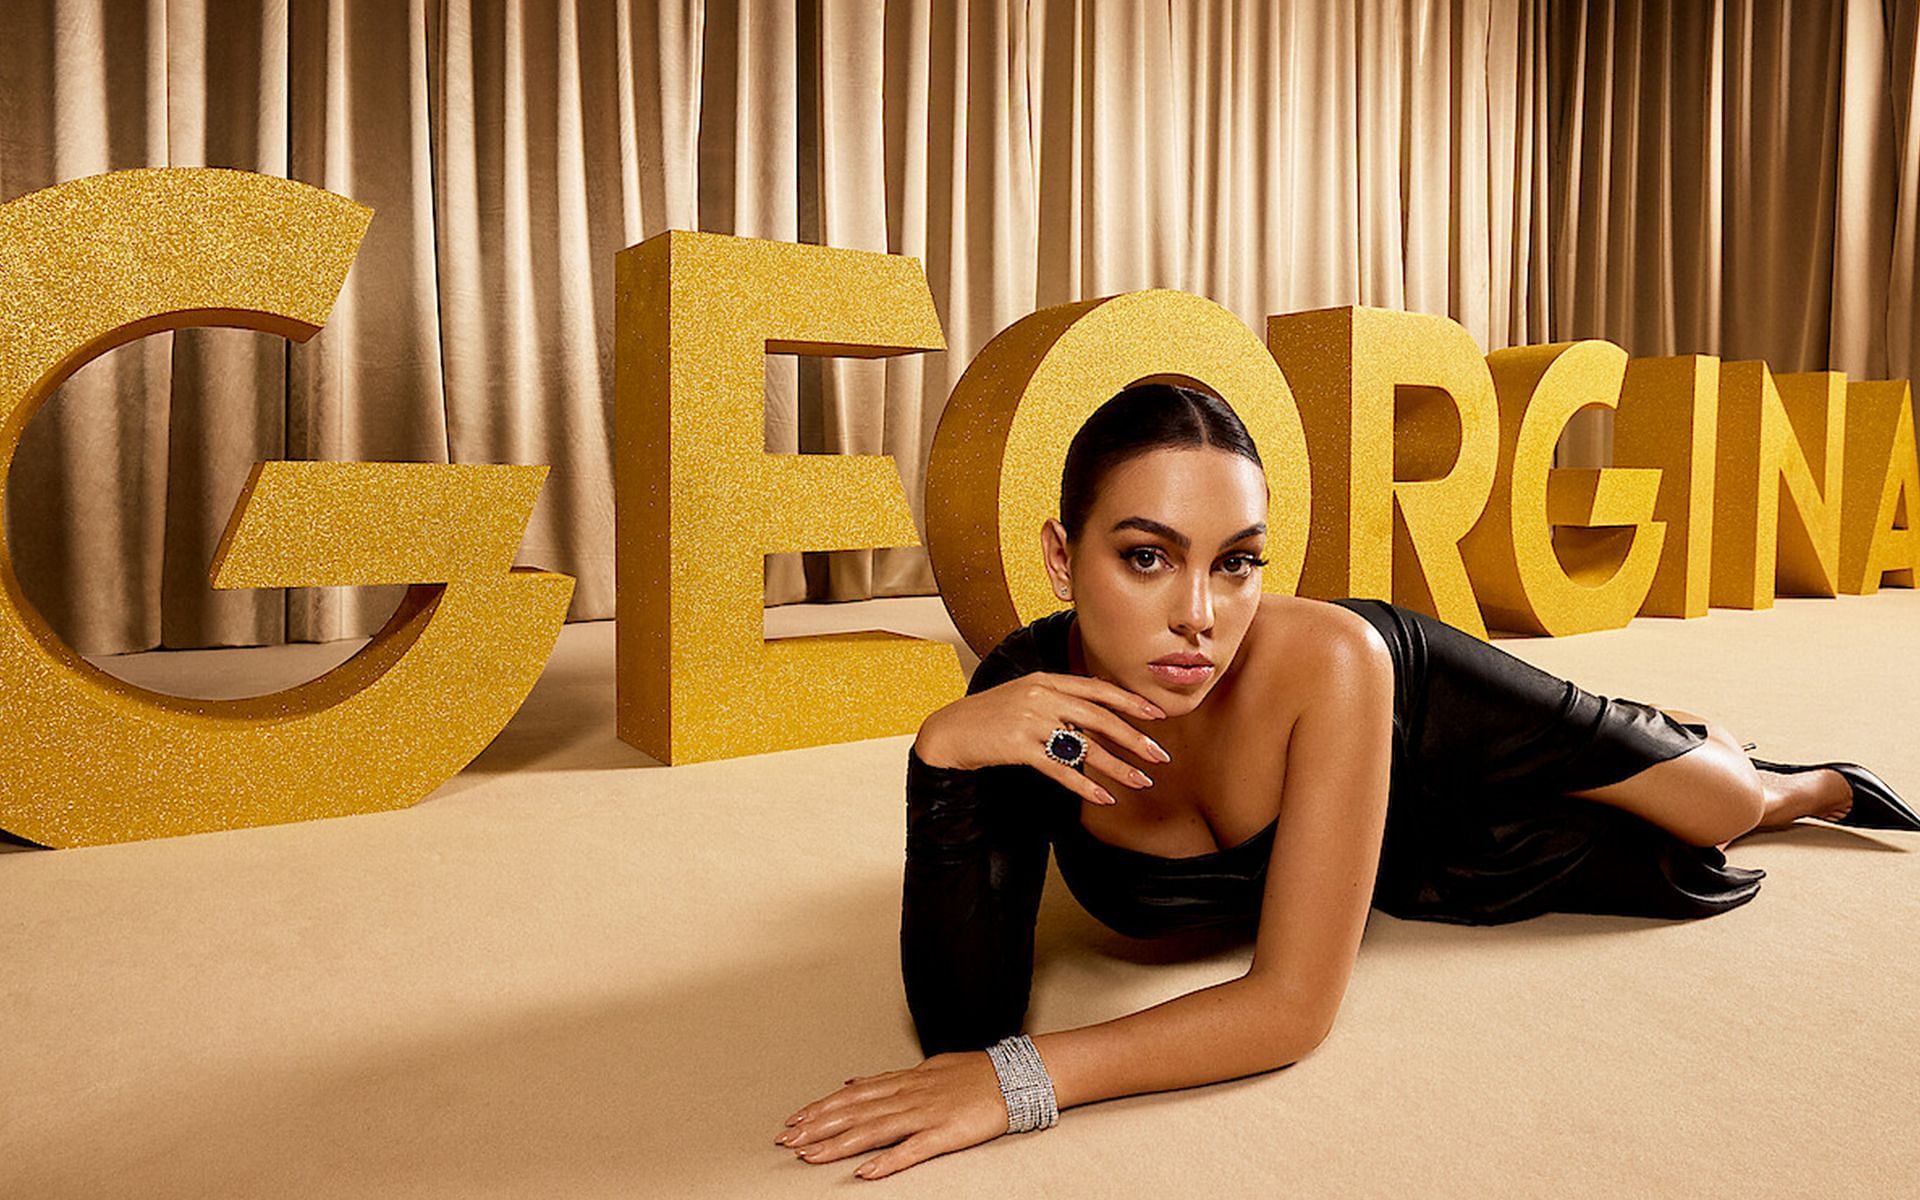 The regal life of Georgina Rodriguez (Image via Instagram/@georginagio)